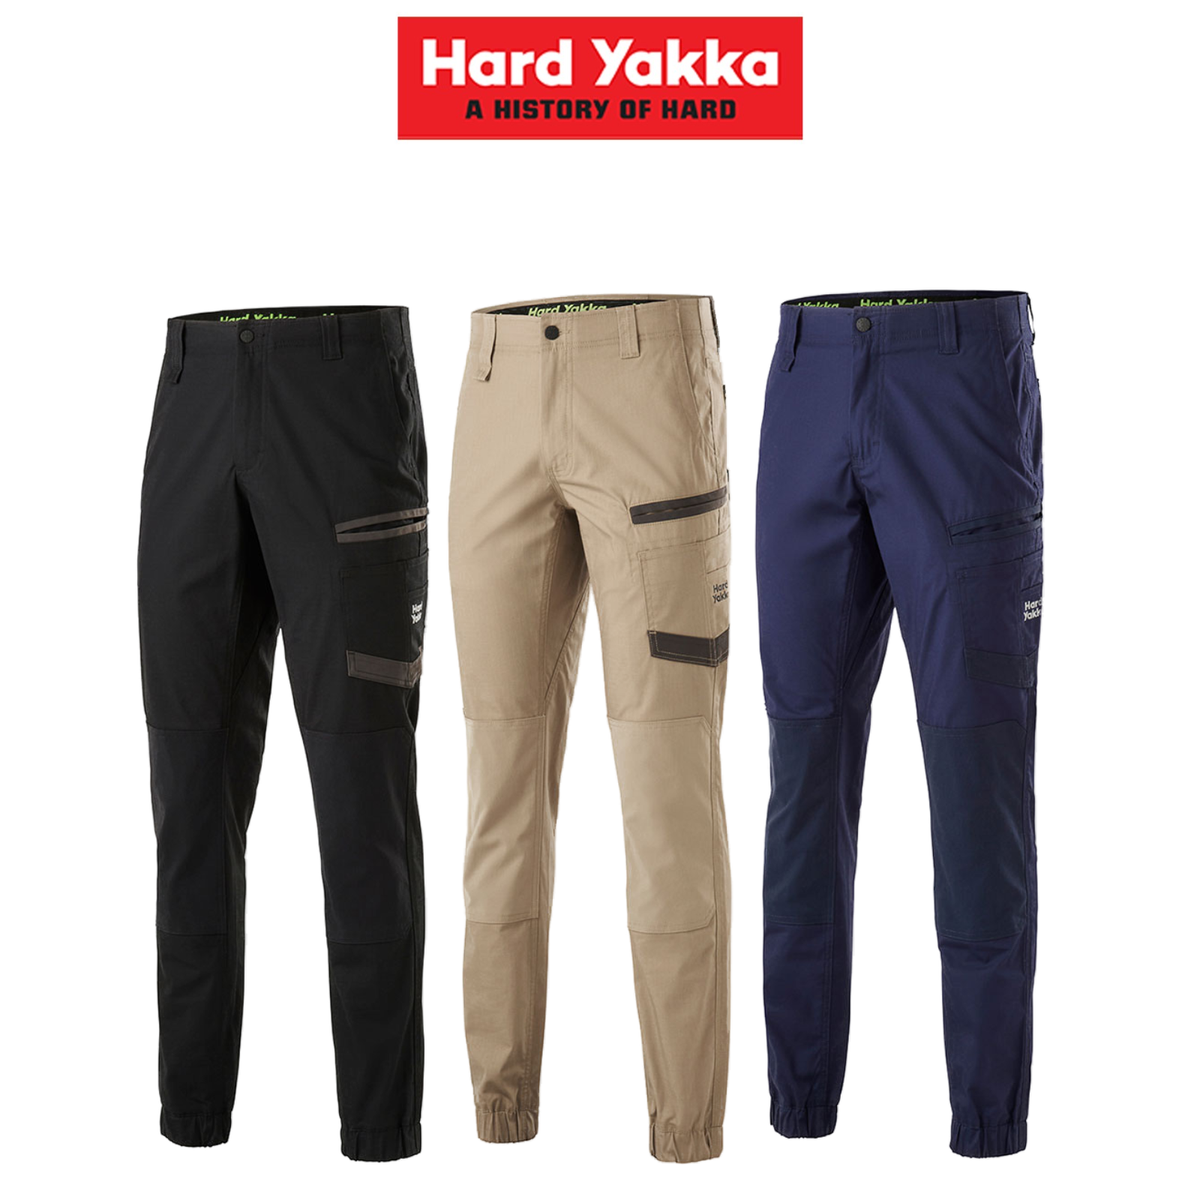 Hard Yakka Mens Raptor Cuff Pants Work Safety Tough Comfy Cargo Wear Y02717